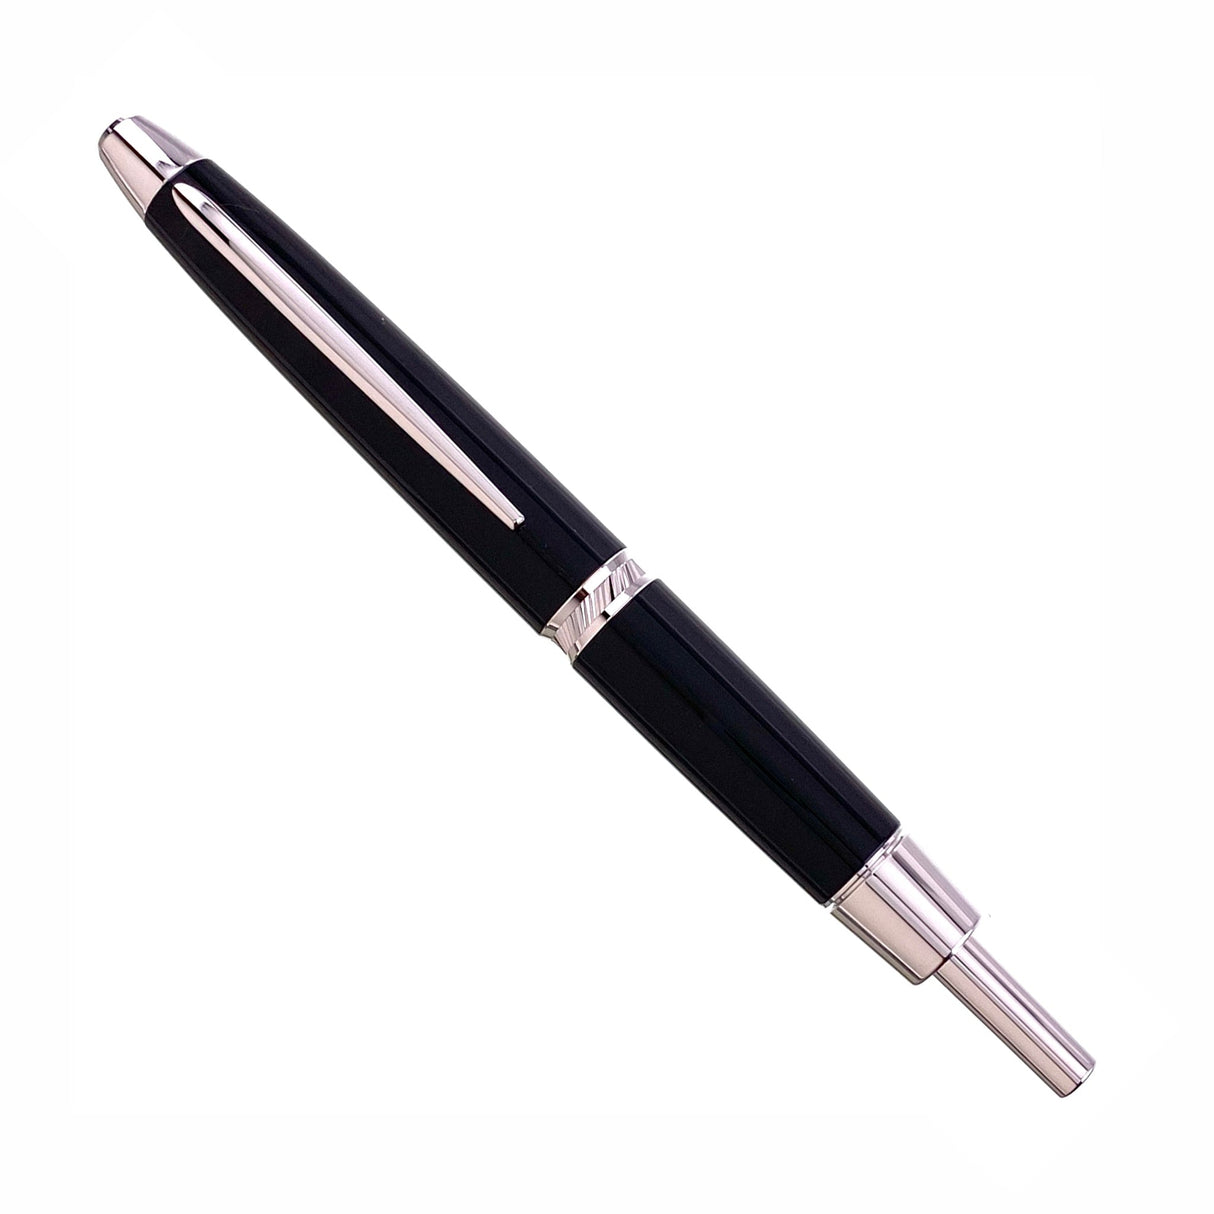 Pilot & Namiki Vanishing Point LS Black & Rhodium - Fountain Pen (18kt Gold Nib)